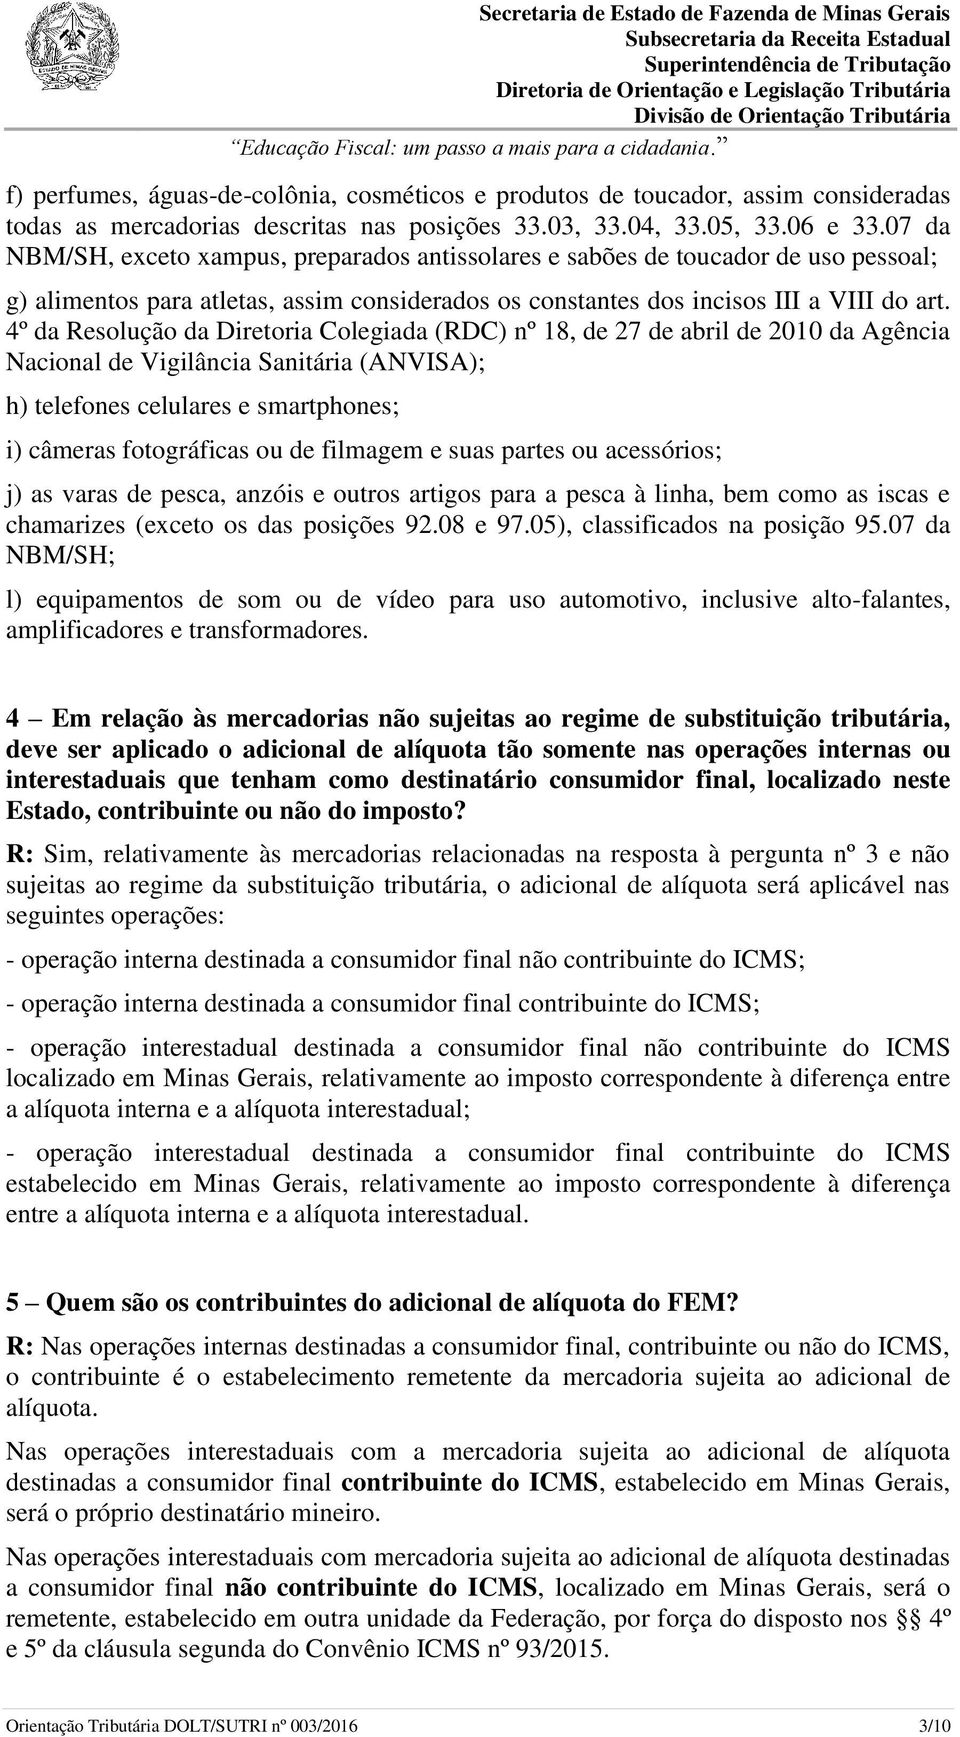 4º da Resolução da Diretoria Colegiada (RDC) nº 18, de 27 de abril de 2010 da Agência Nacional de Vigilância Sanitária (ANVISA); h) telefones celulares e smartphones; i) câmeras fotográficas ou de